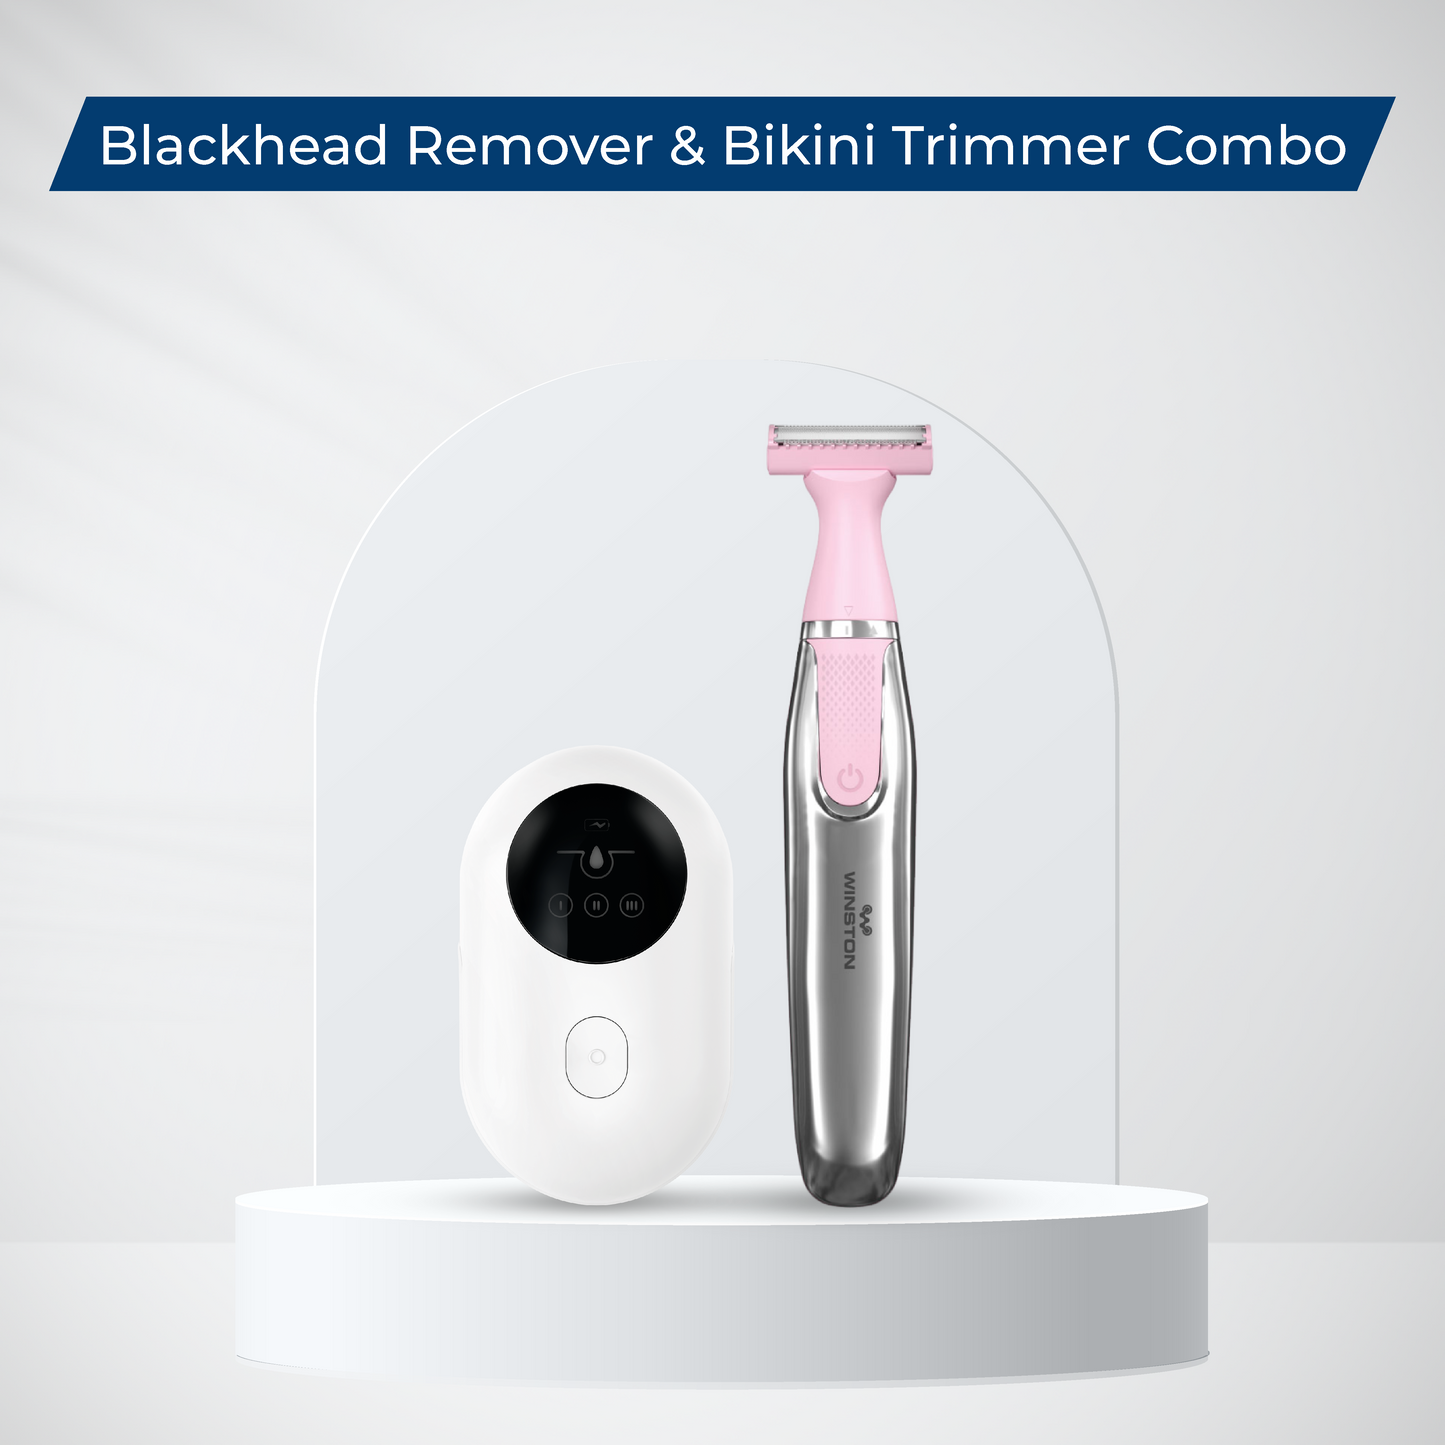 Blackhead Remover & Bikini Trimmer Combo